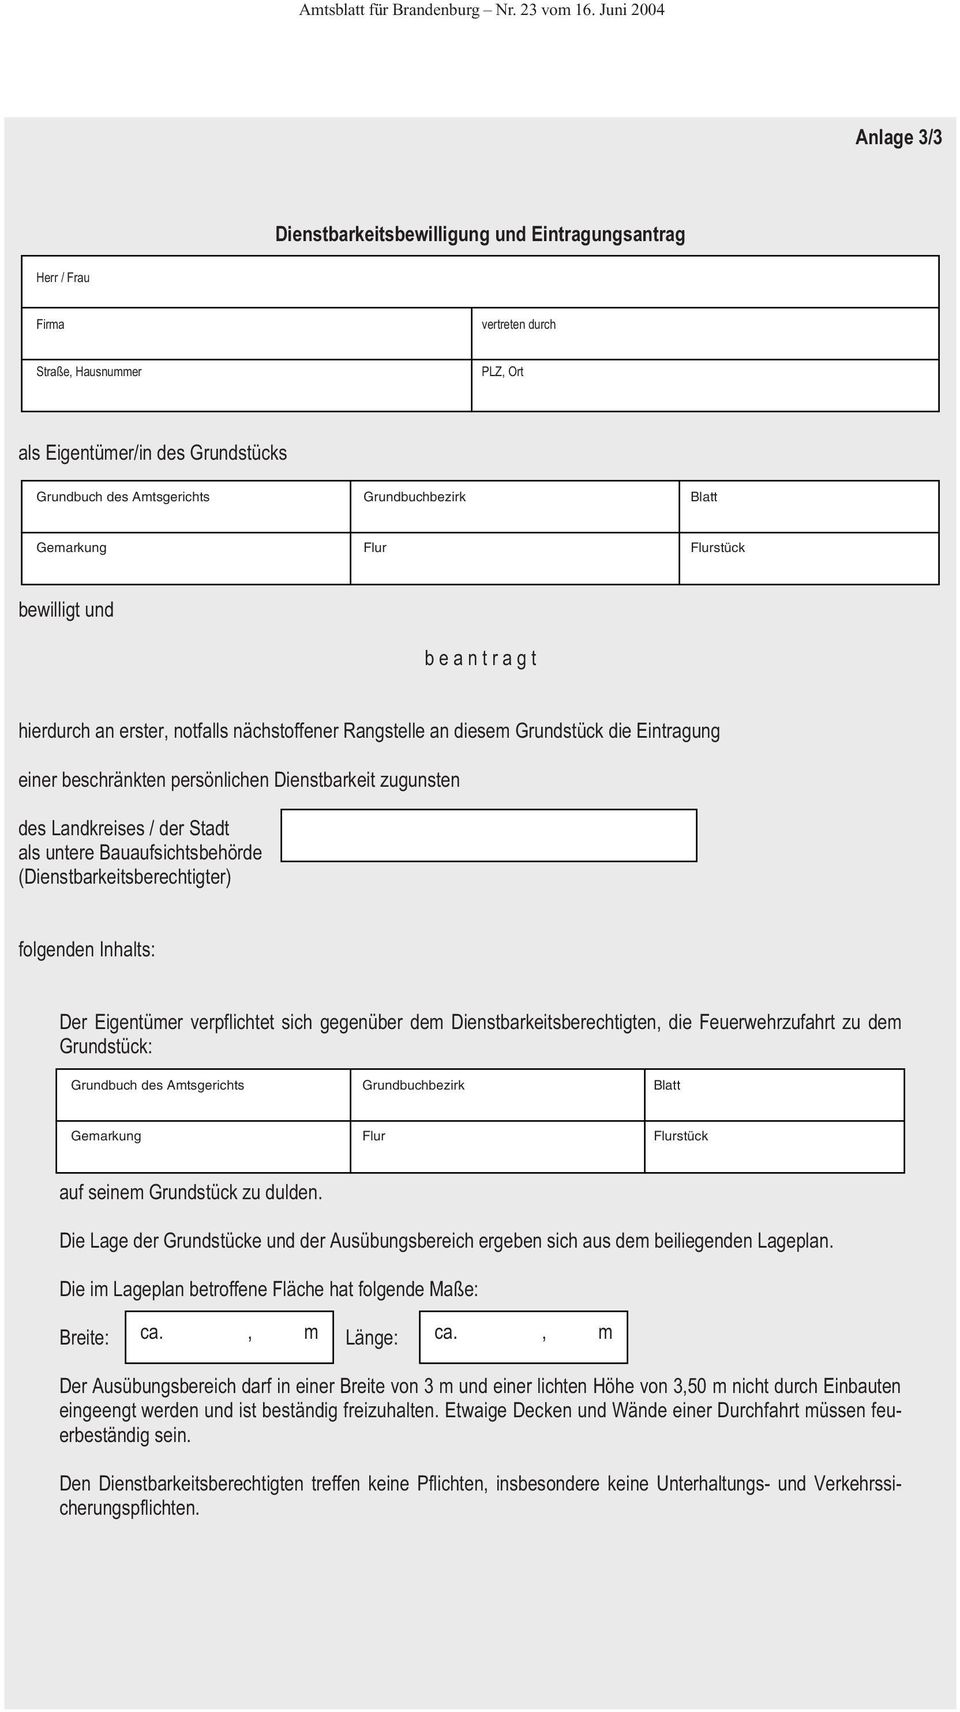 Rechtliche Sicherung Durch Beschrankte Personliche Dienstbarkeiten 65 Der Brandenburgischen Bauordnung Pdf Kostenfreier Download